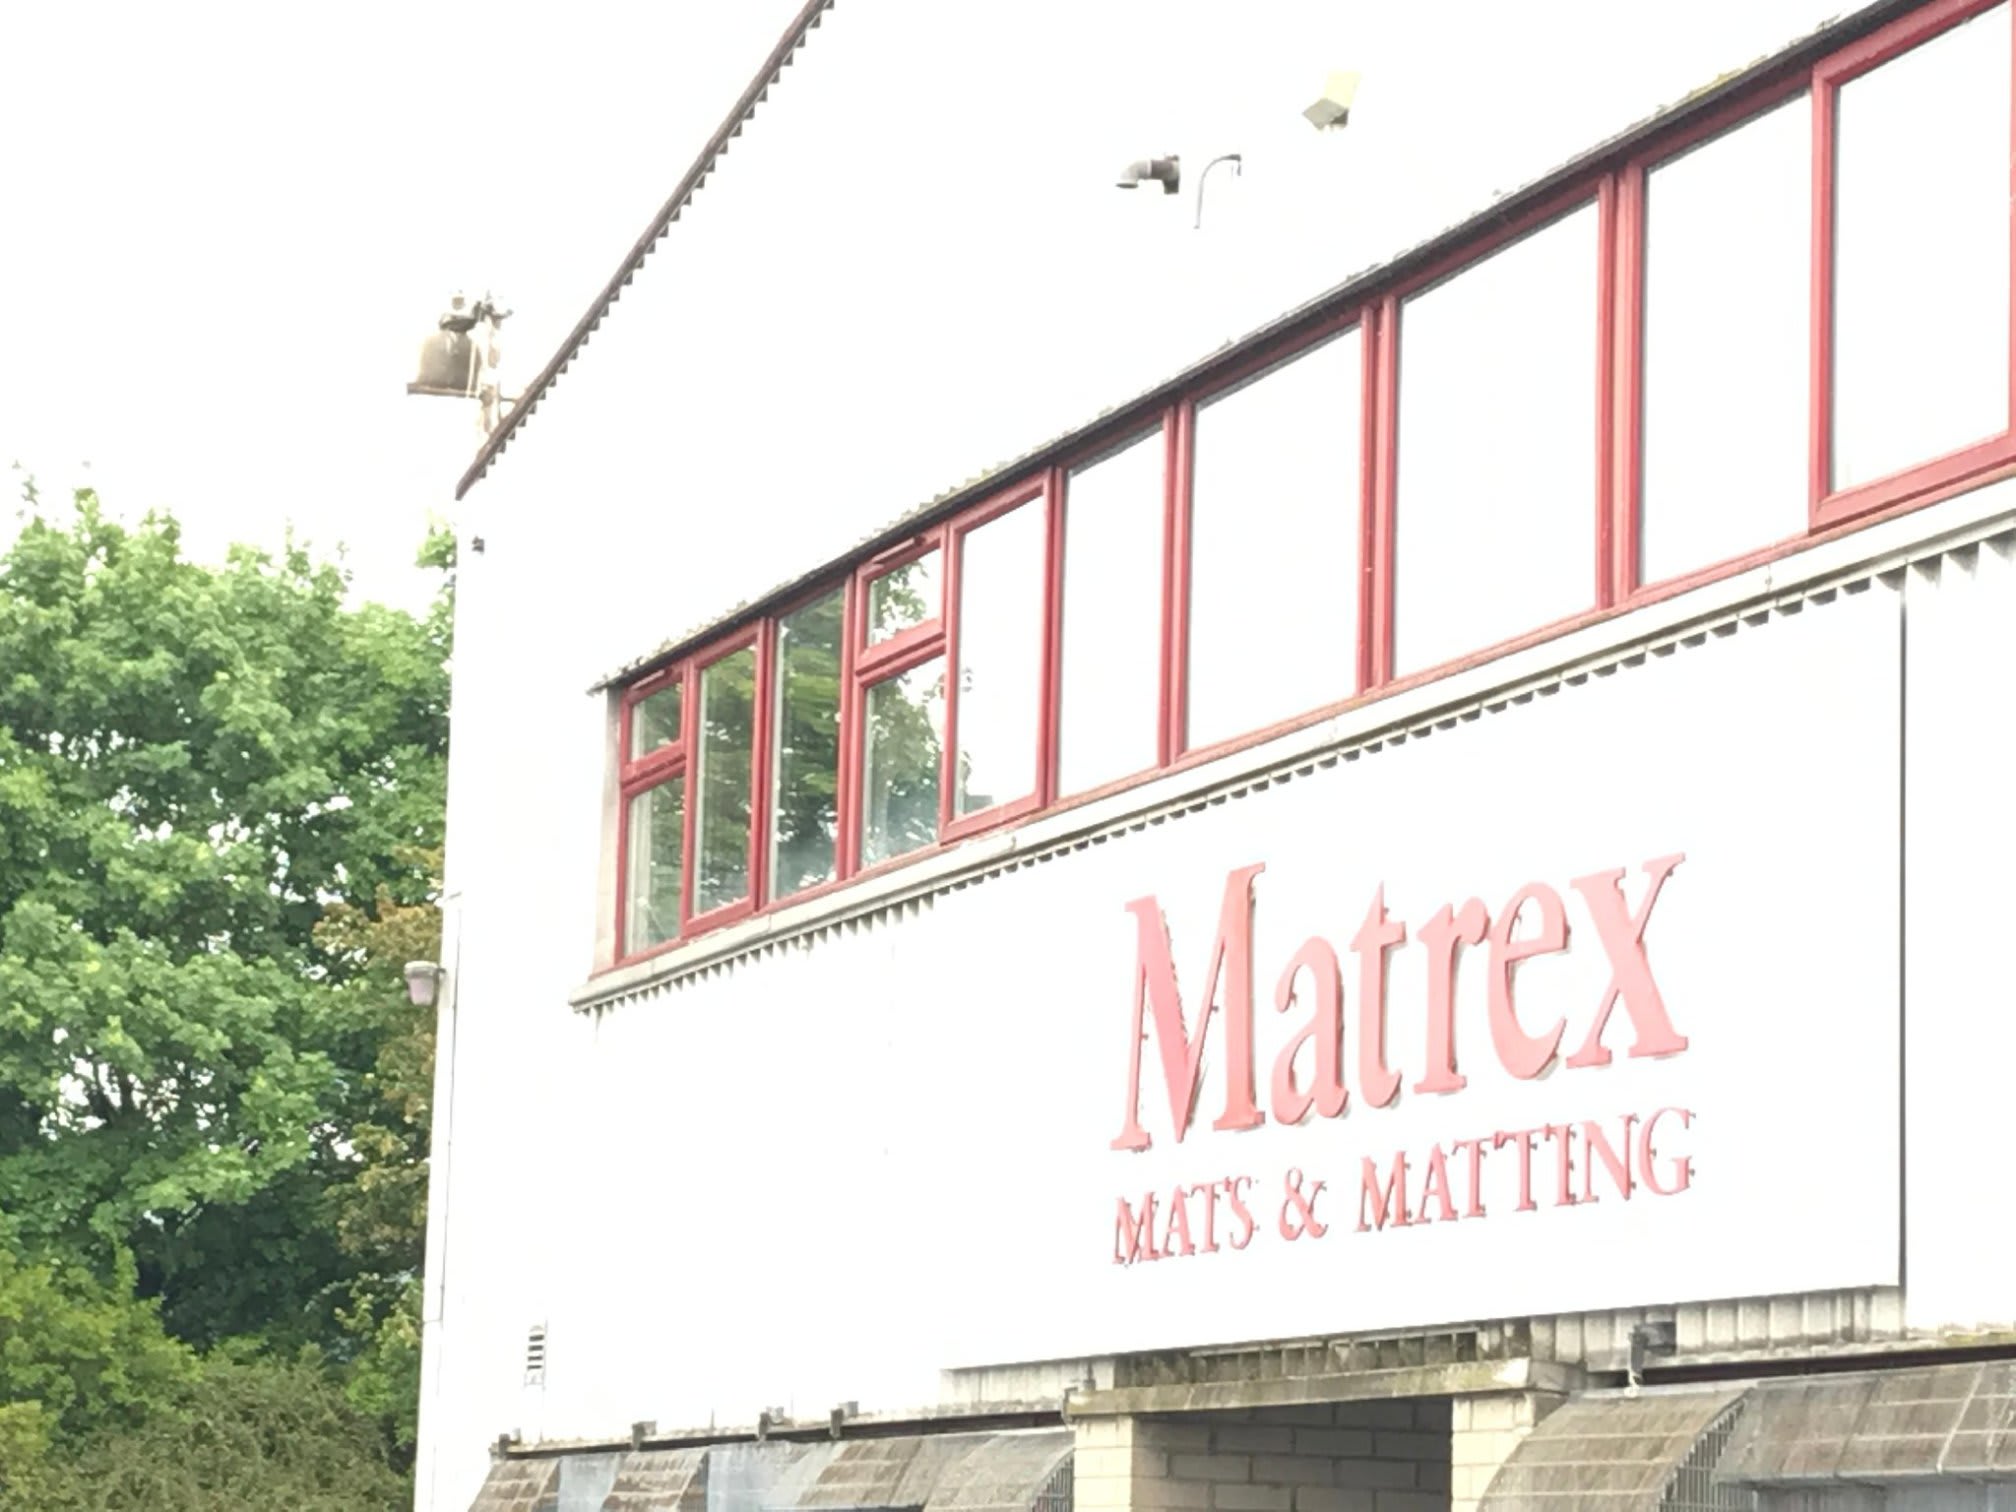 Images Matrex Mats & Matting Ltd